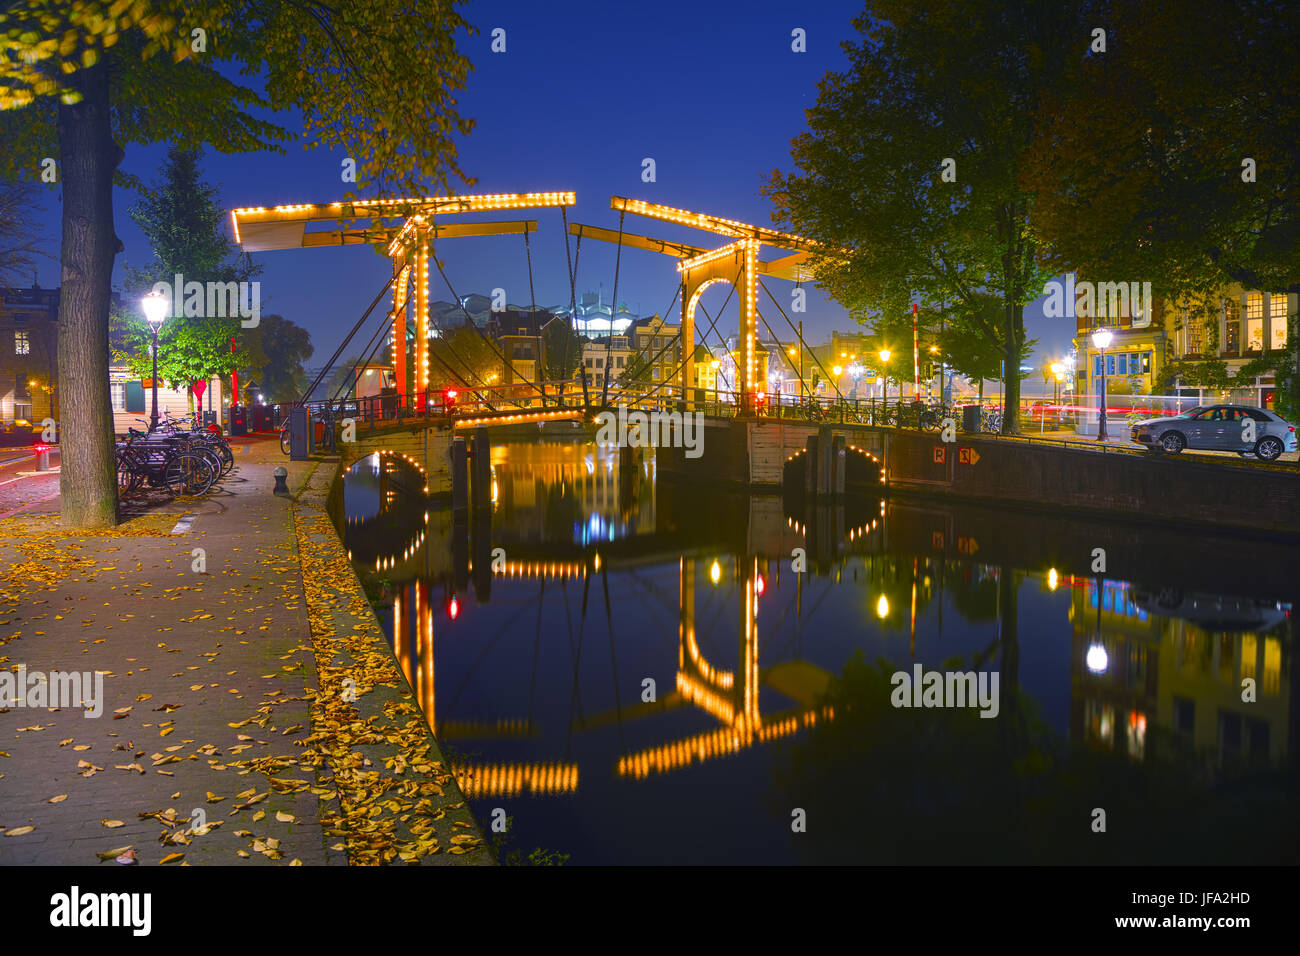 Vue sur la ville d'Amsterdam avec ses canaux et ses ponts Banque D'Images